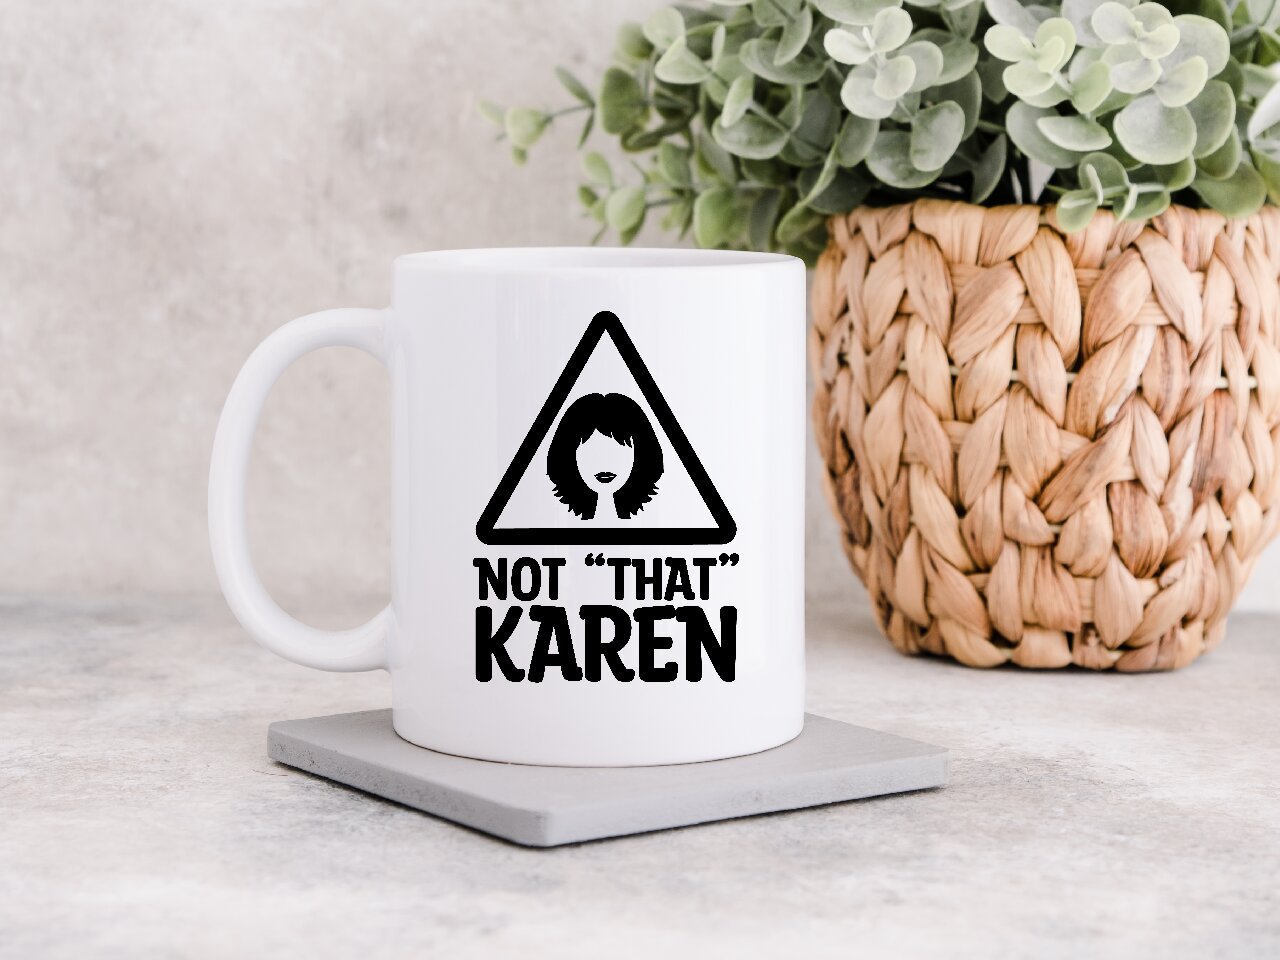 Not "That" Karen - Coffee Mug